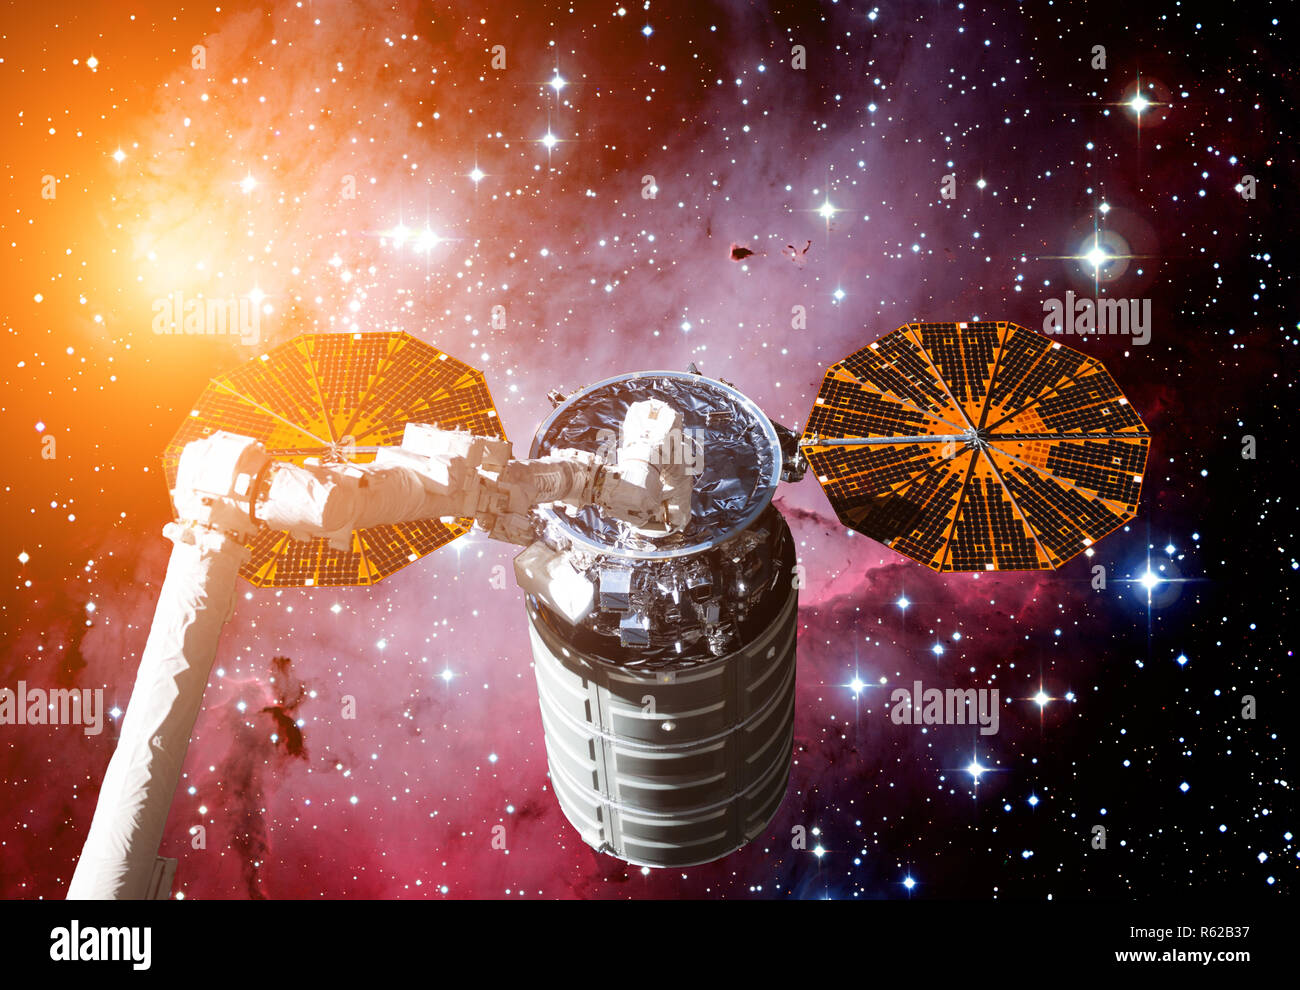 Il veicolo spaziale Cygnus in spazio aperto. Foto Stock